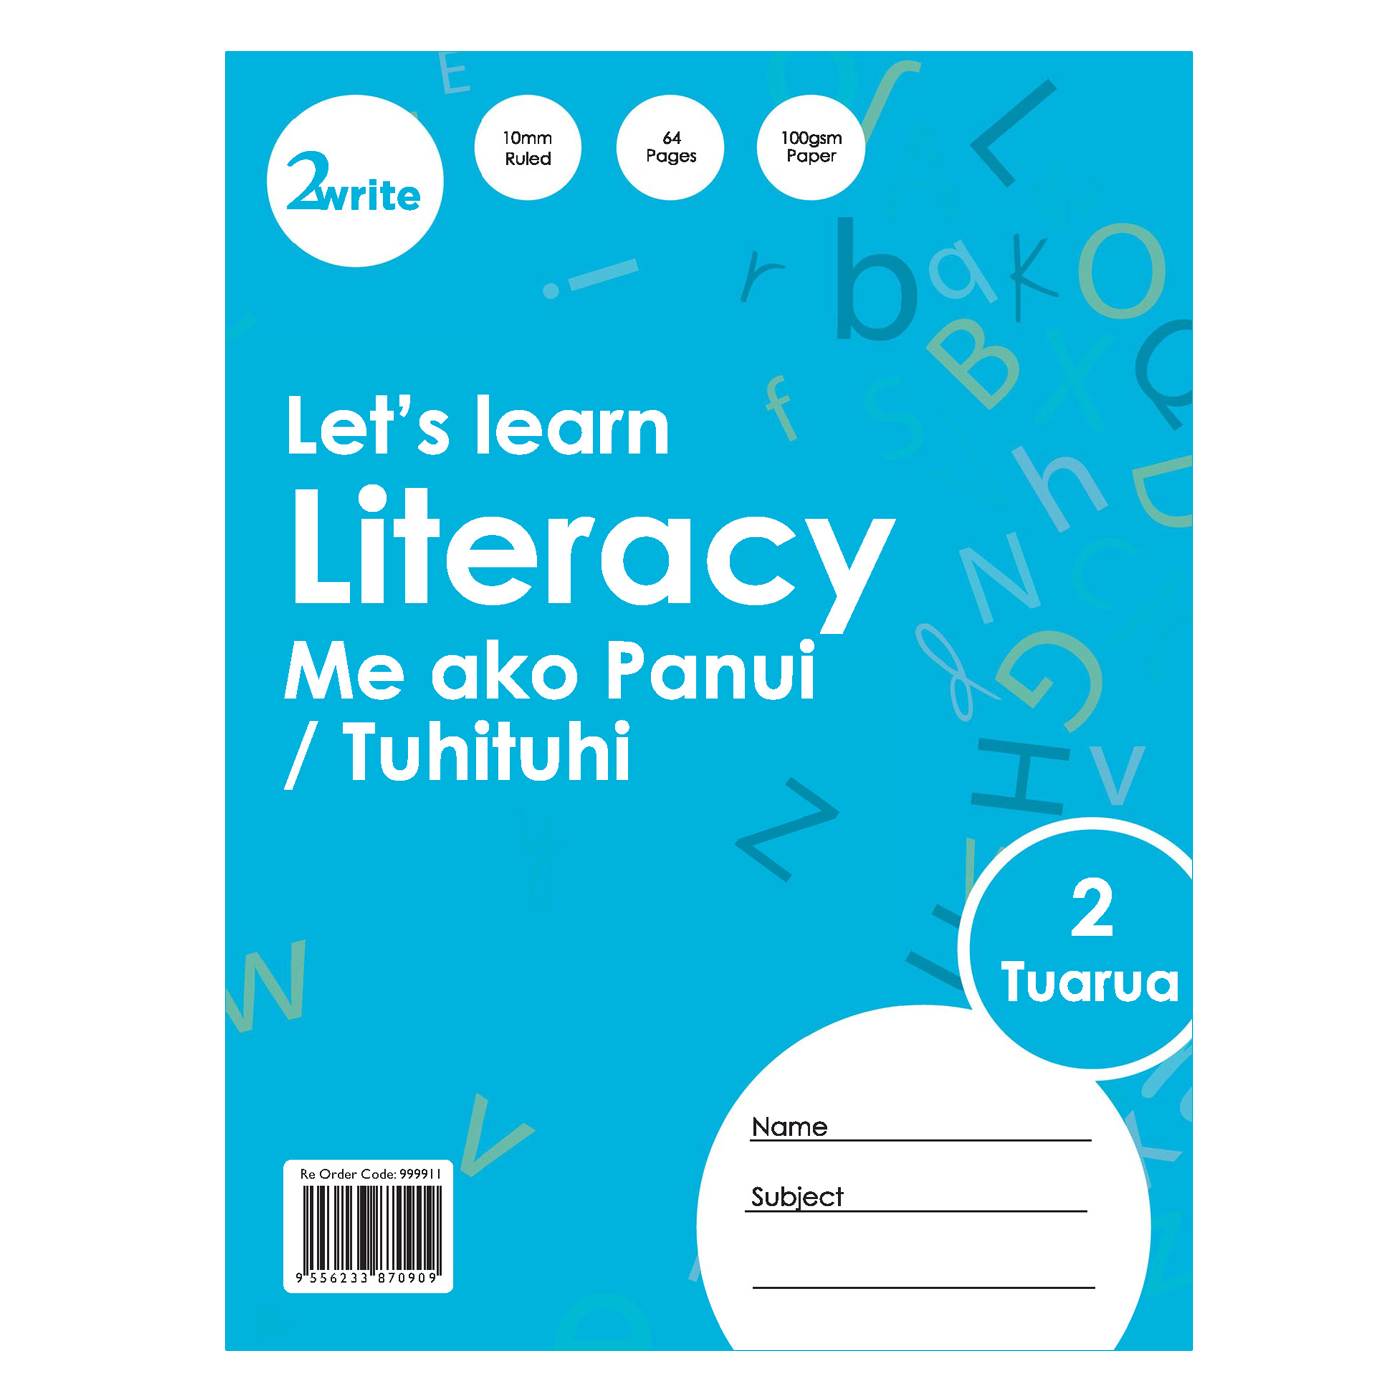 2Write Lets Learn Literacy Book 2 Me ako Panui/Tuhituhi Tuarua 64 Pages